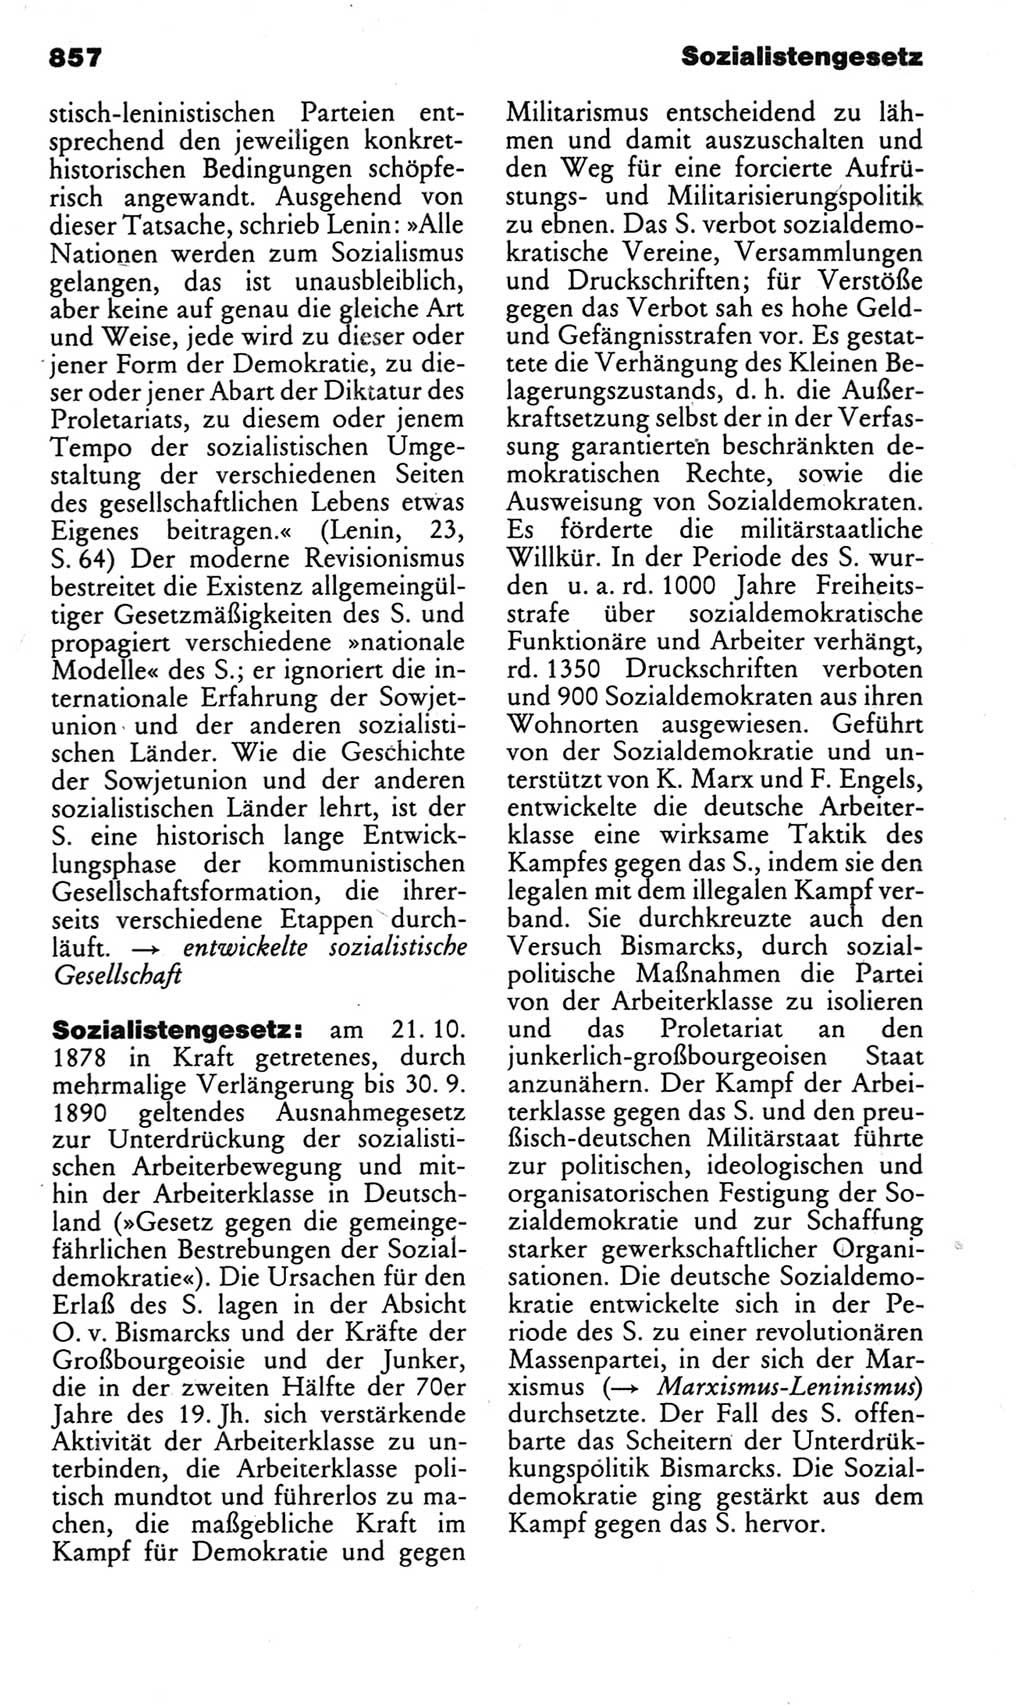 Kleines politisches Wörterbuch [Deutsche Demokratische Republik (DDR)] 1983, Seite 857 (Kl. pol. Wb. DDR 1983, S. 857)